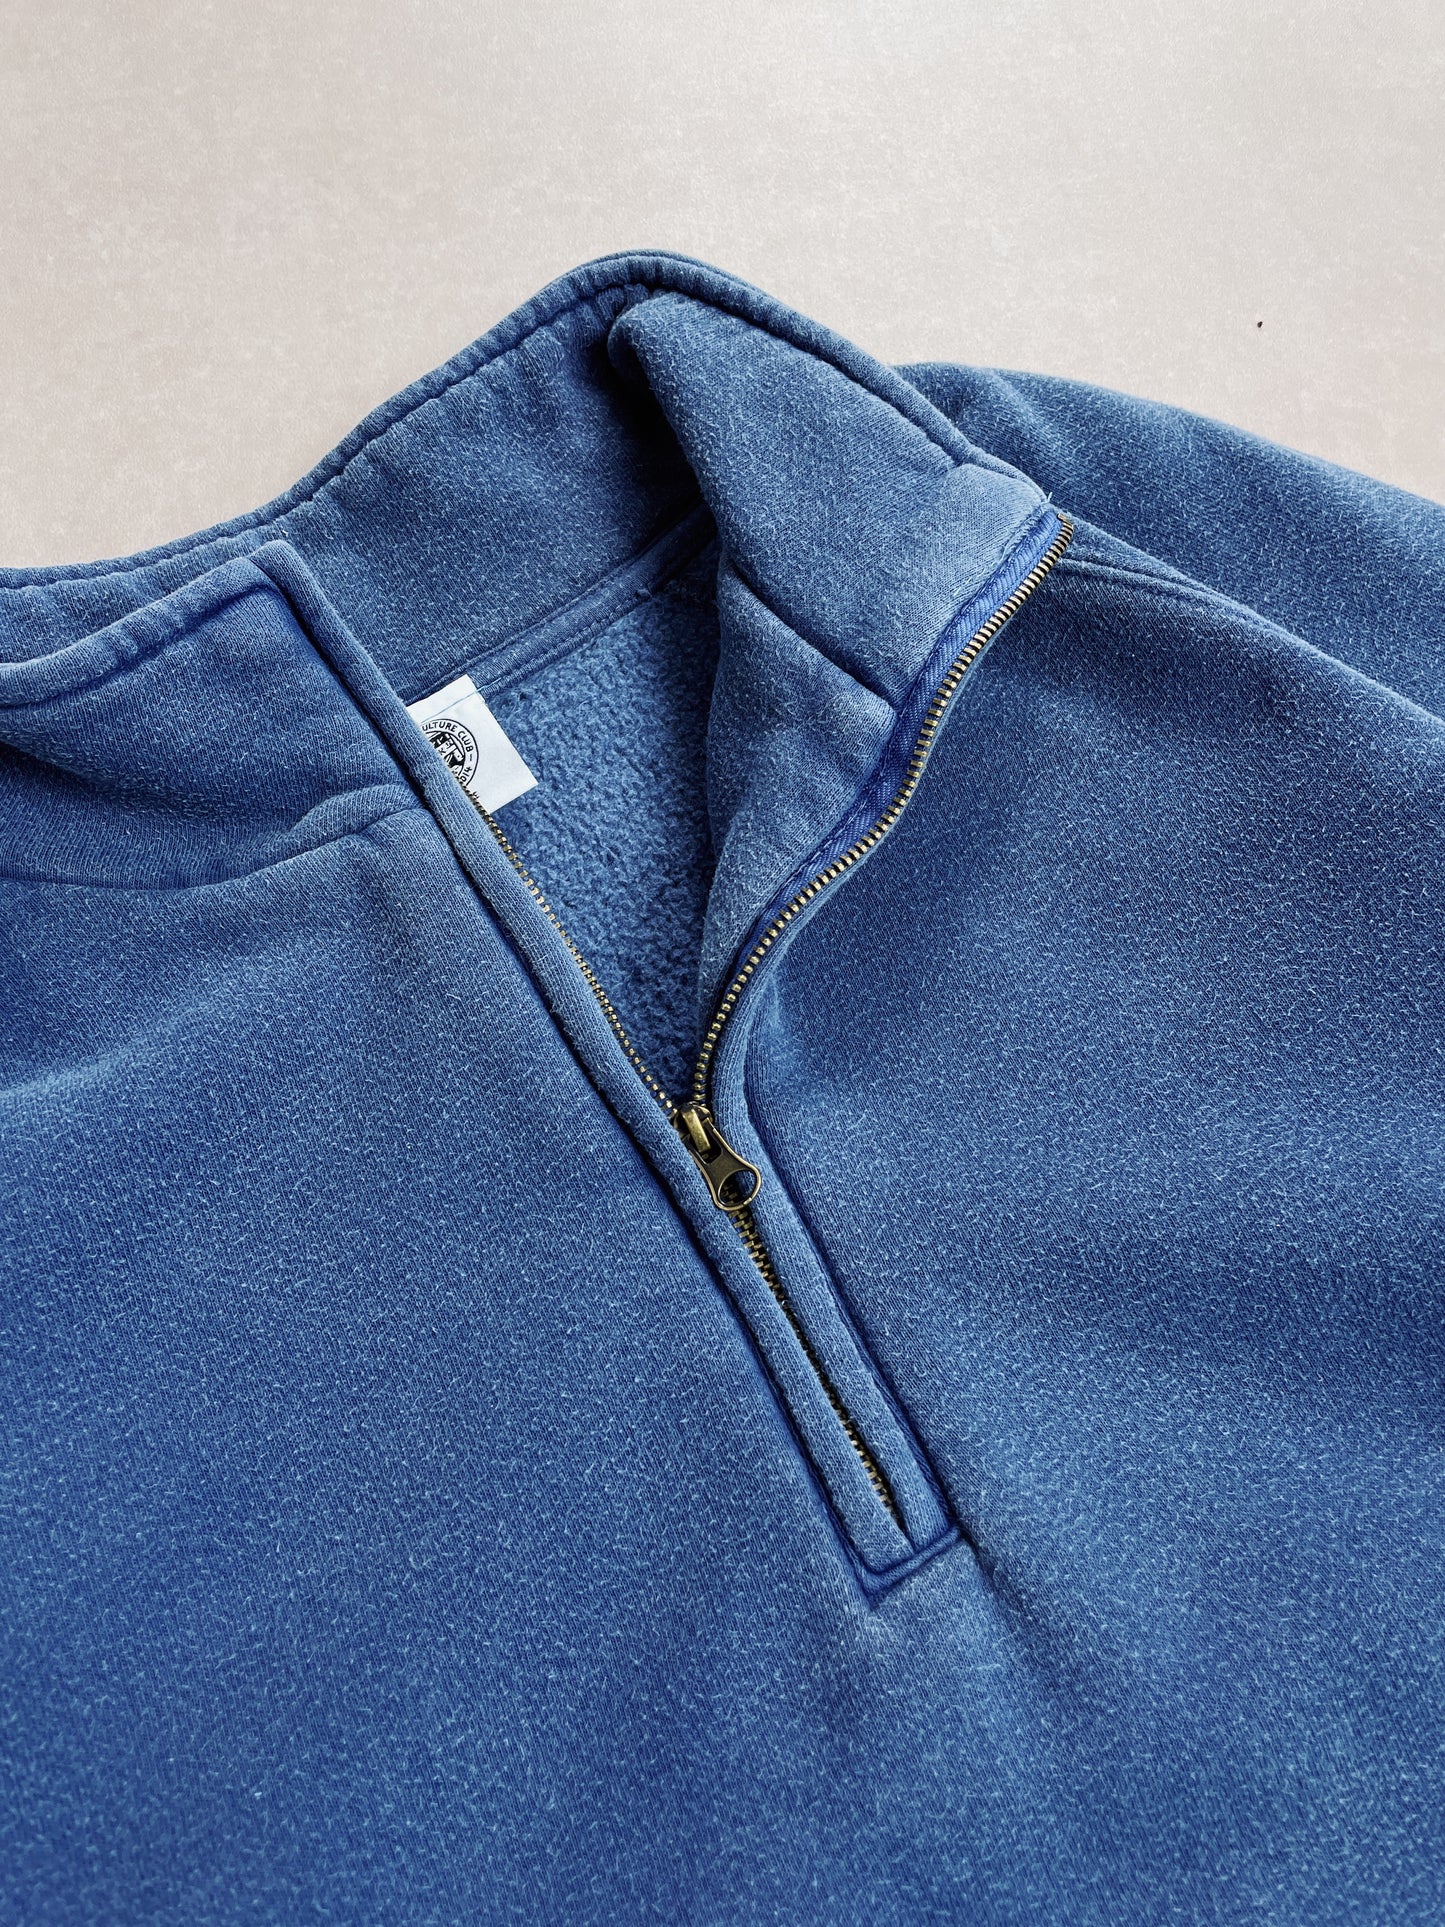 Essentials Vintage Washed 1/4 Zip Sweatshirt - Navy